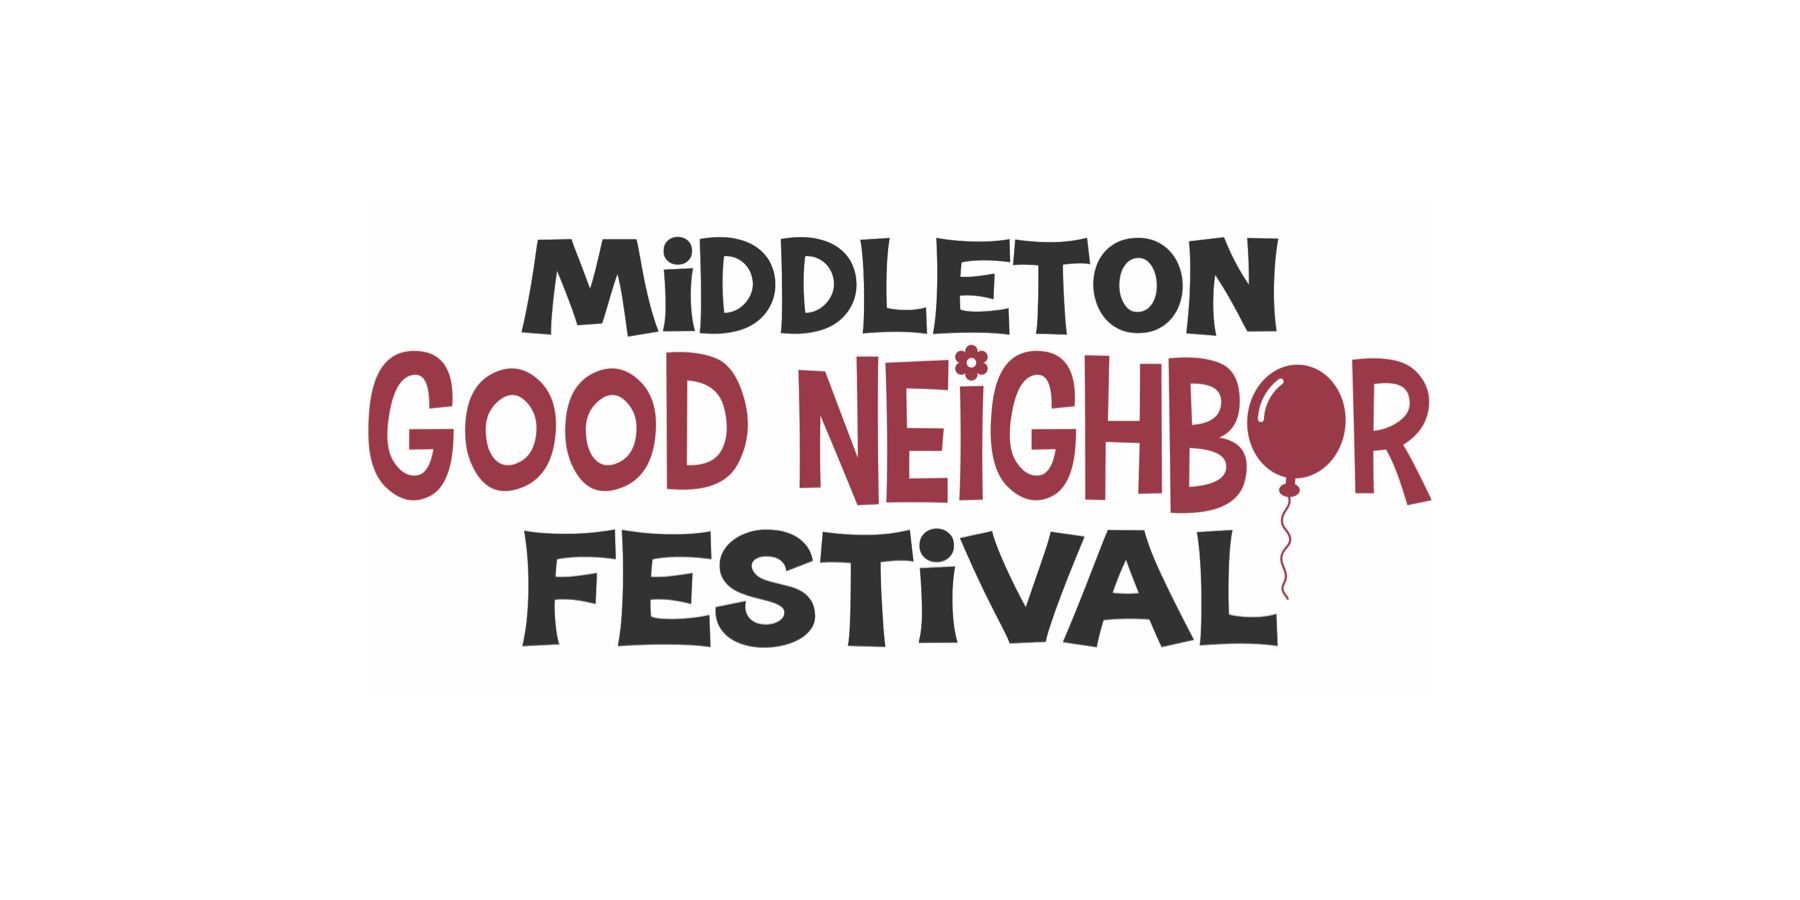 Middleton Good Neighbor Festival